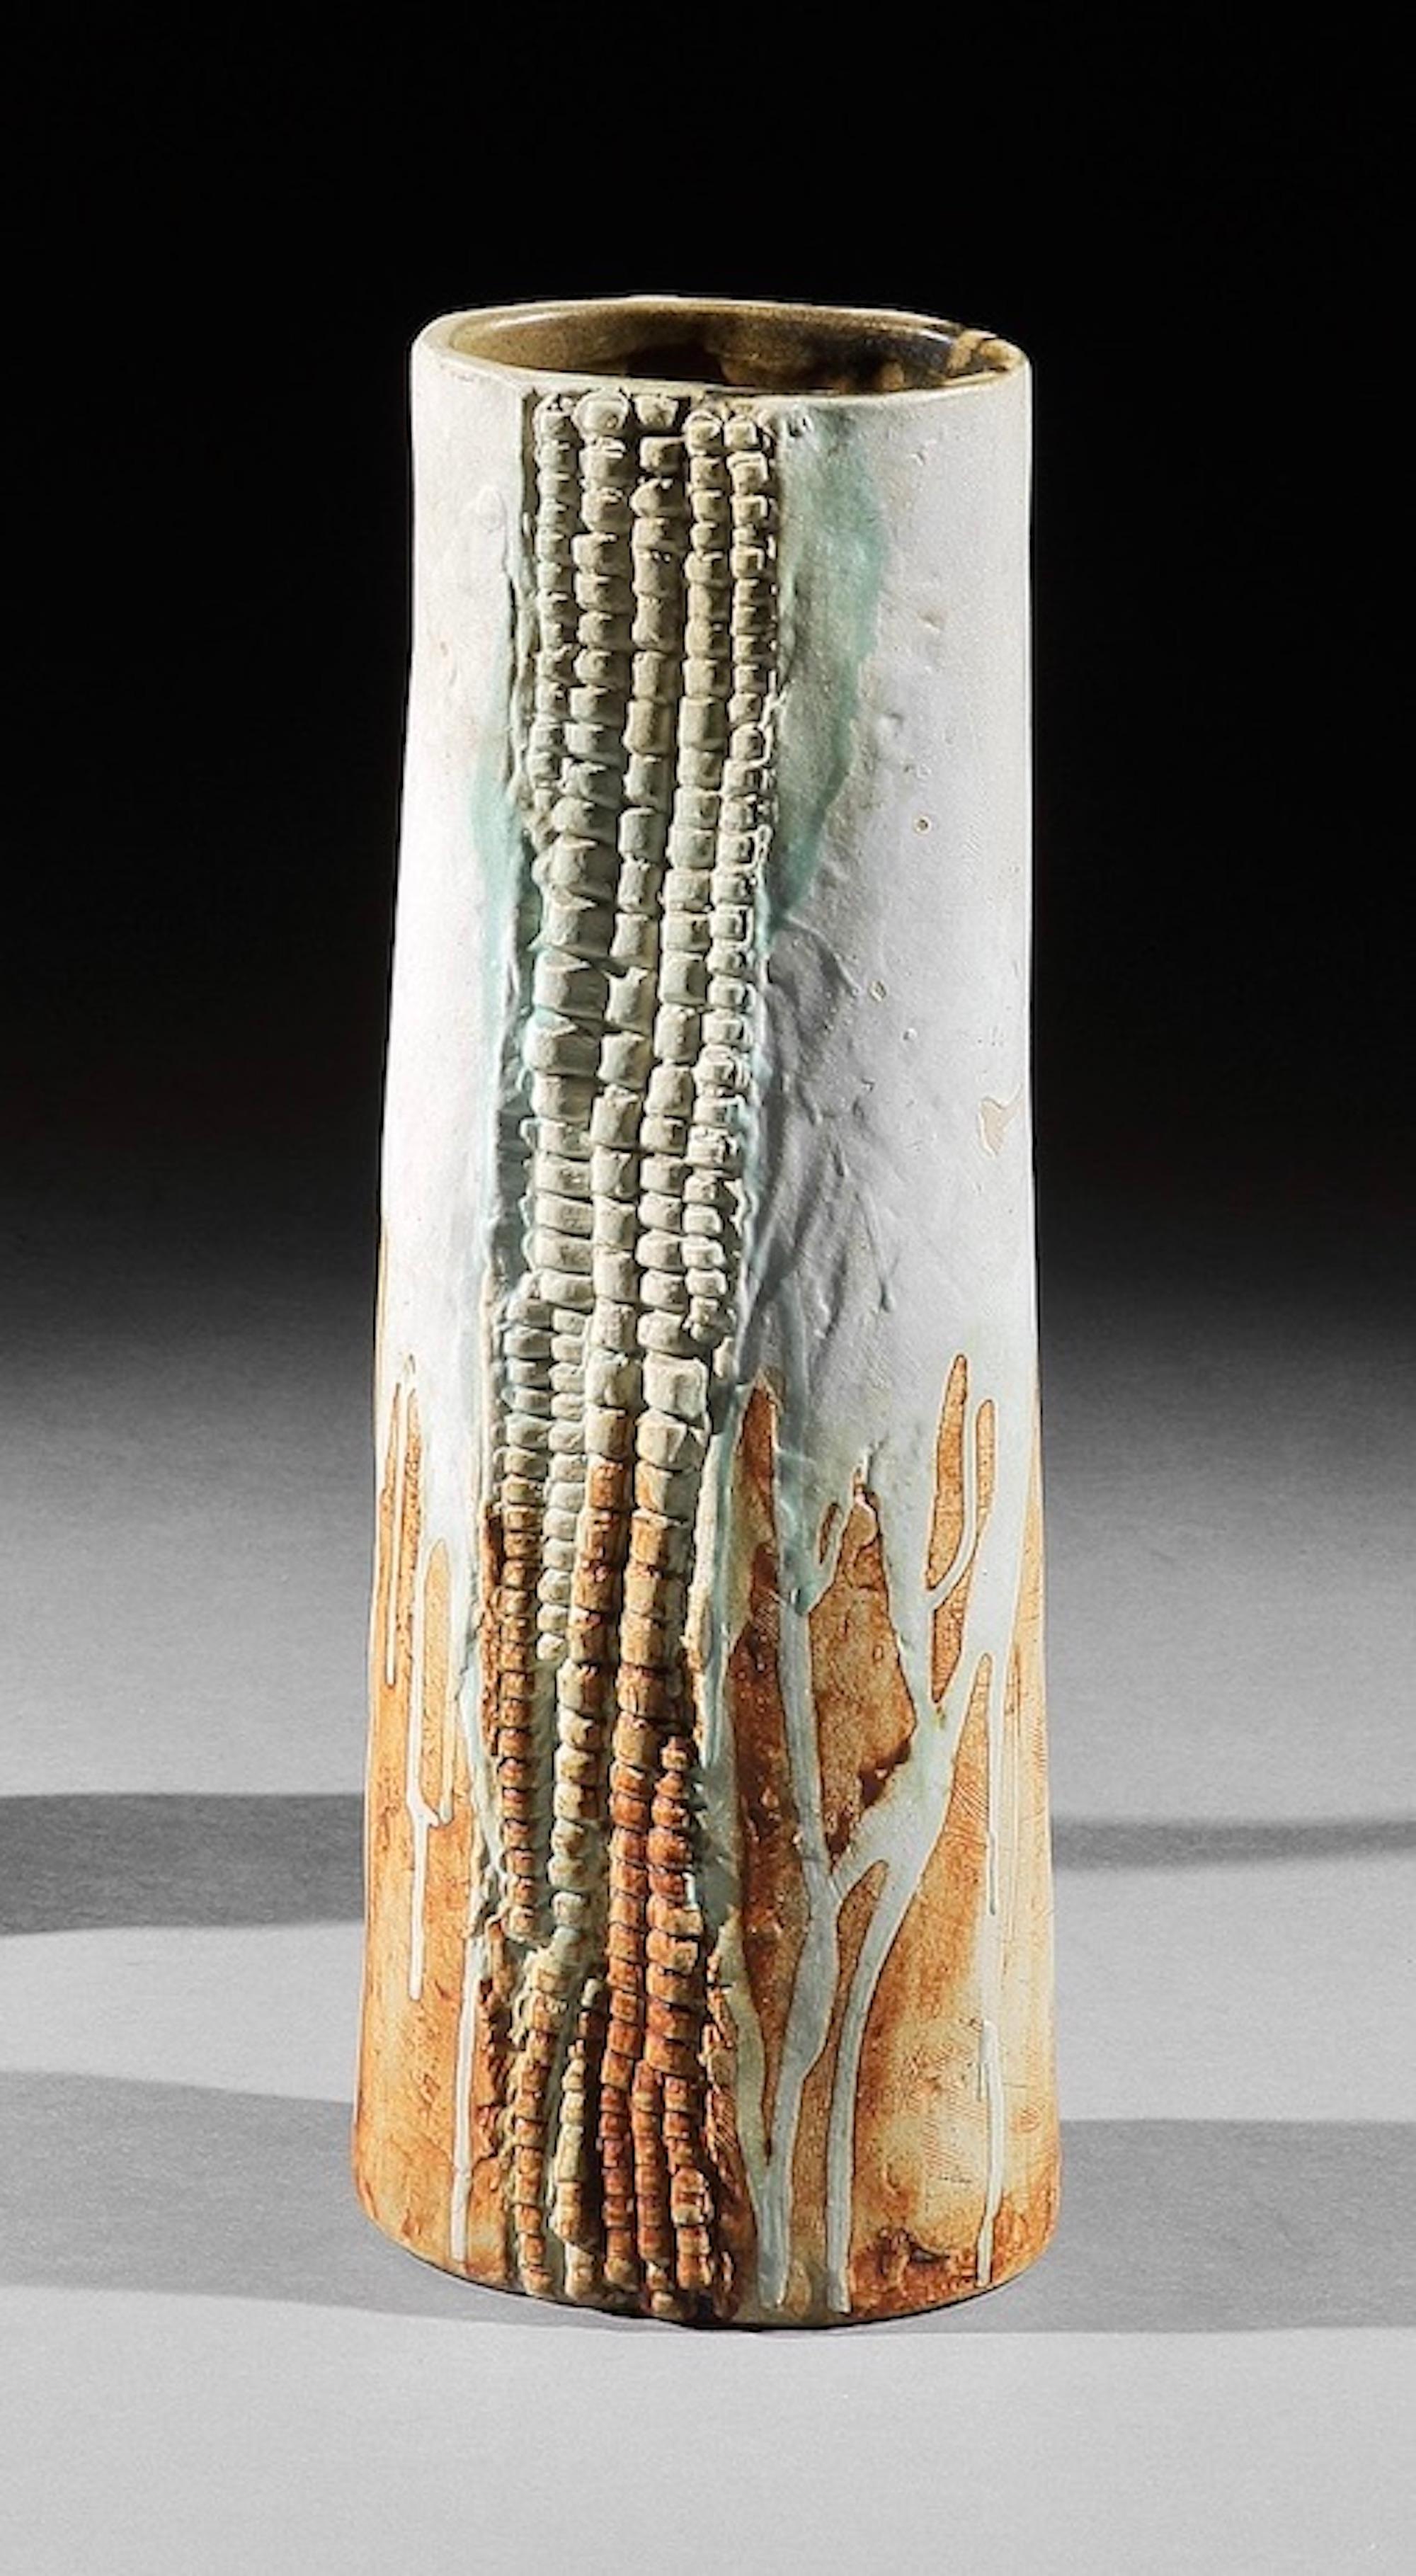 Bernard Rook (né en 1938) : Vase organique en forme de paysage aquatique, 1960-1965
Rare exemple de l'œuvre de Rooke démontrant l'étendue de ses talents artistiques inventifs.

- Un exemple rare du travail artistique de Rooke. Parallèlement, il